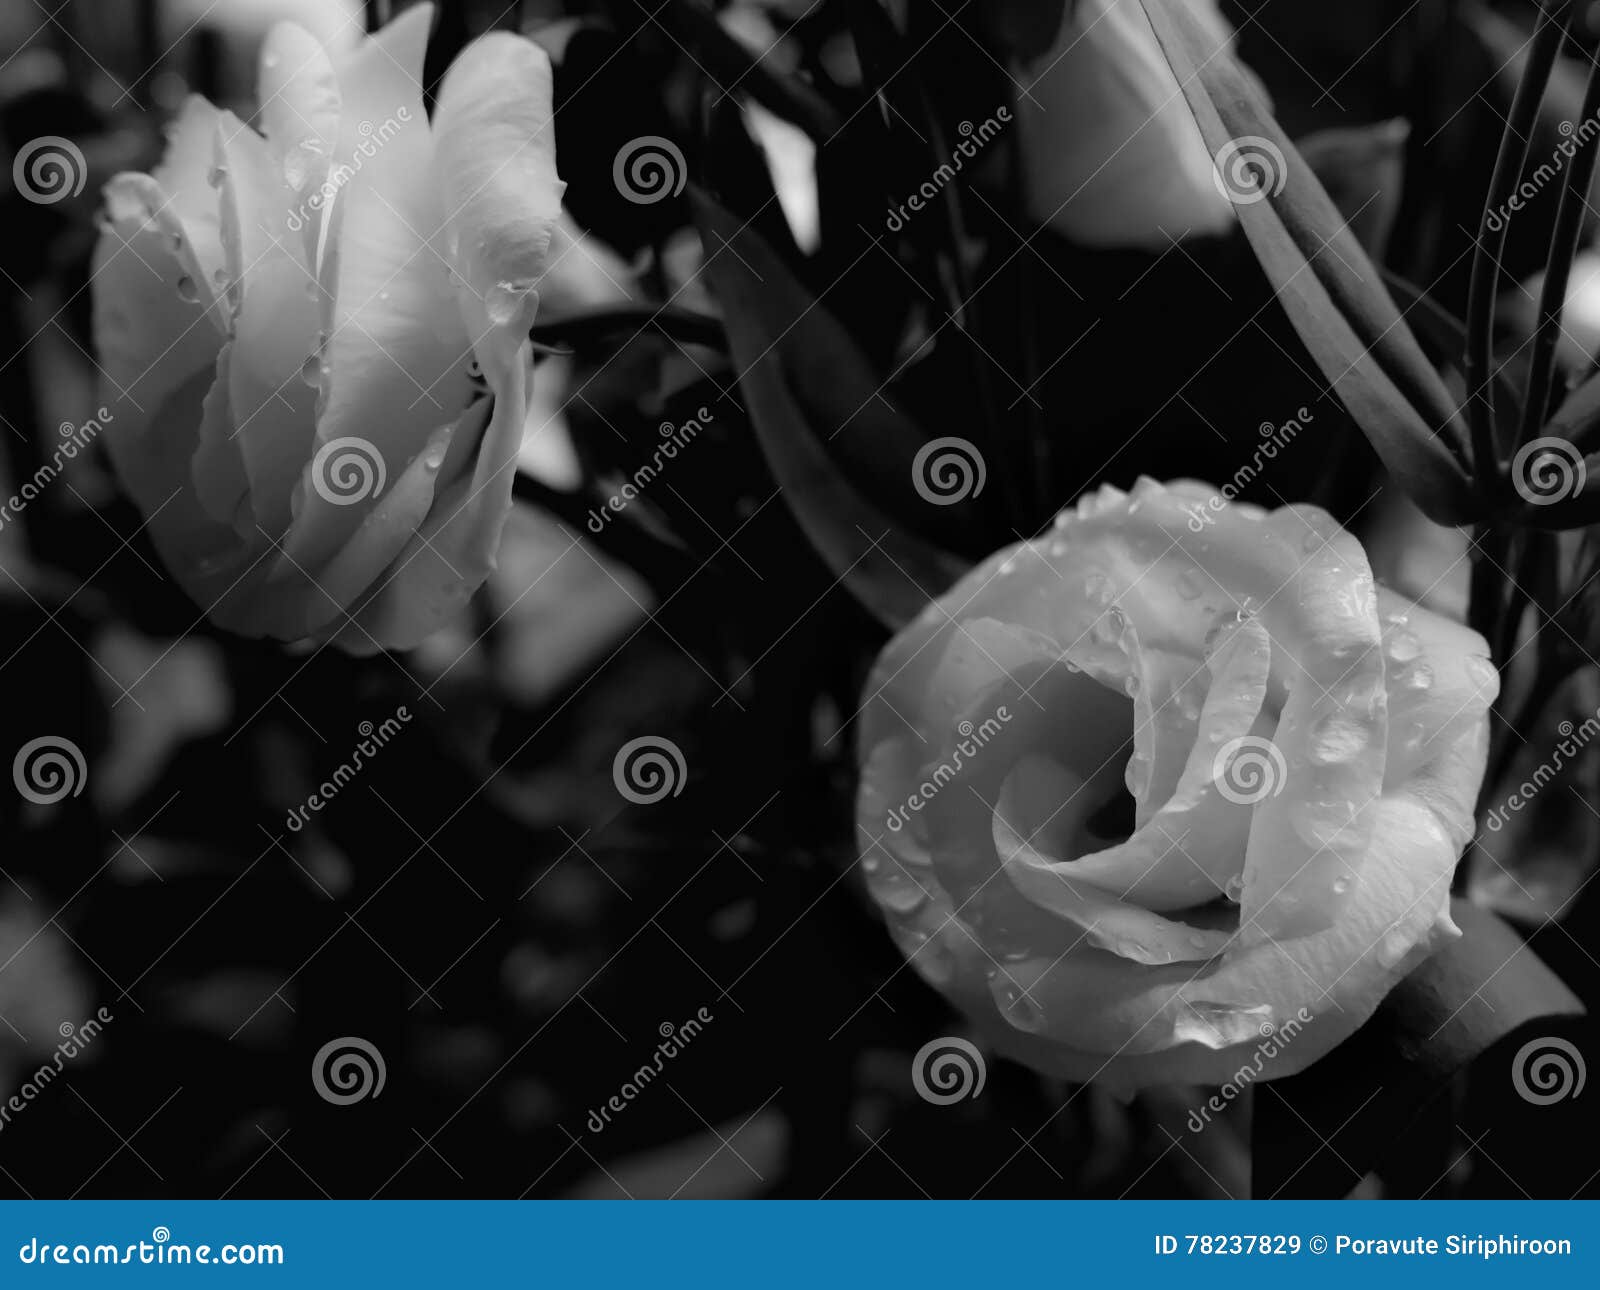 Belle Rose Humide De Blanc Noire Et Blanche Image Stock